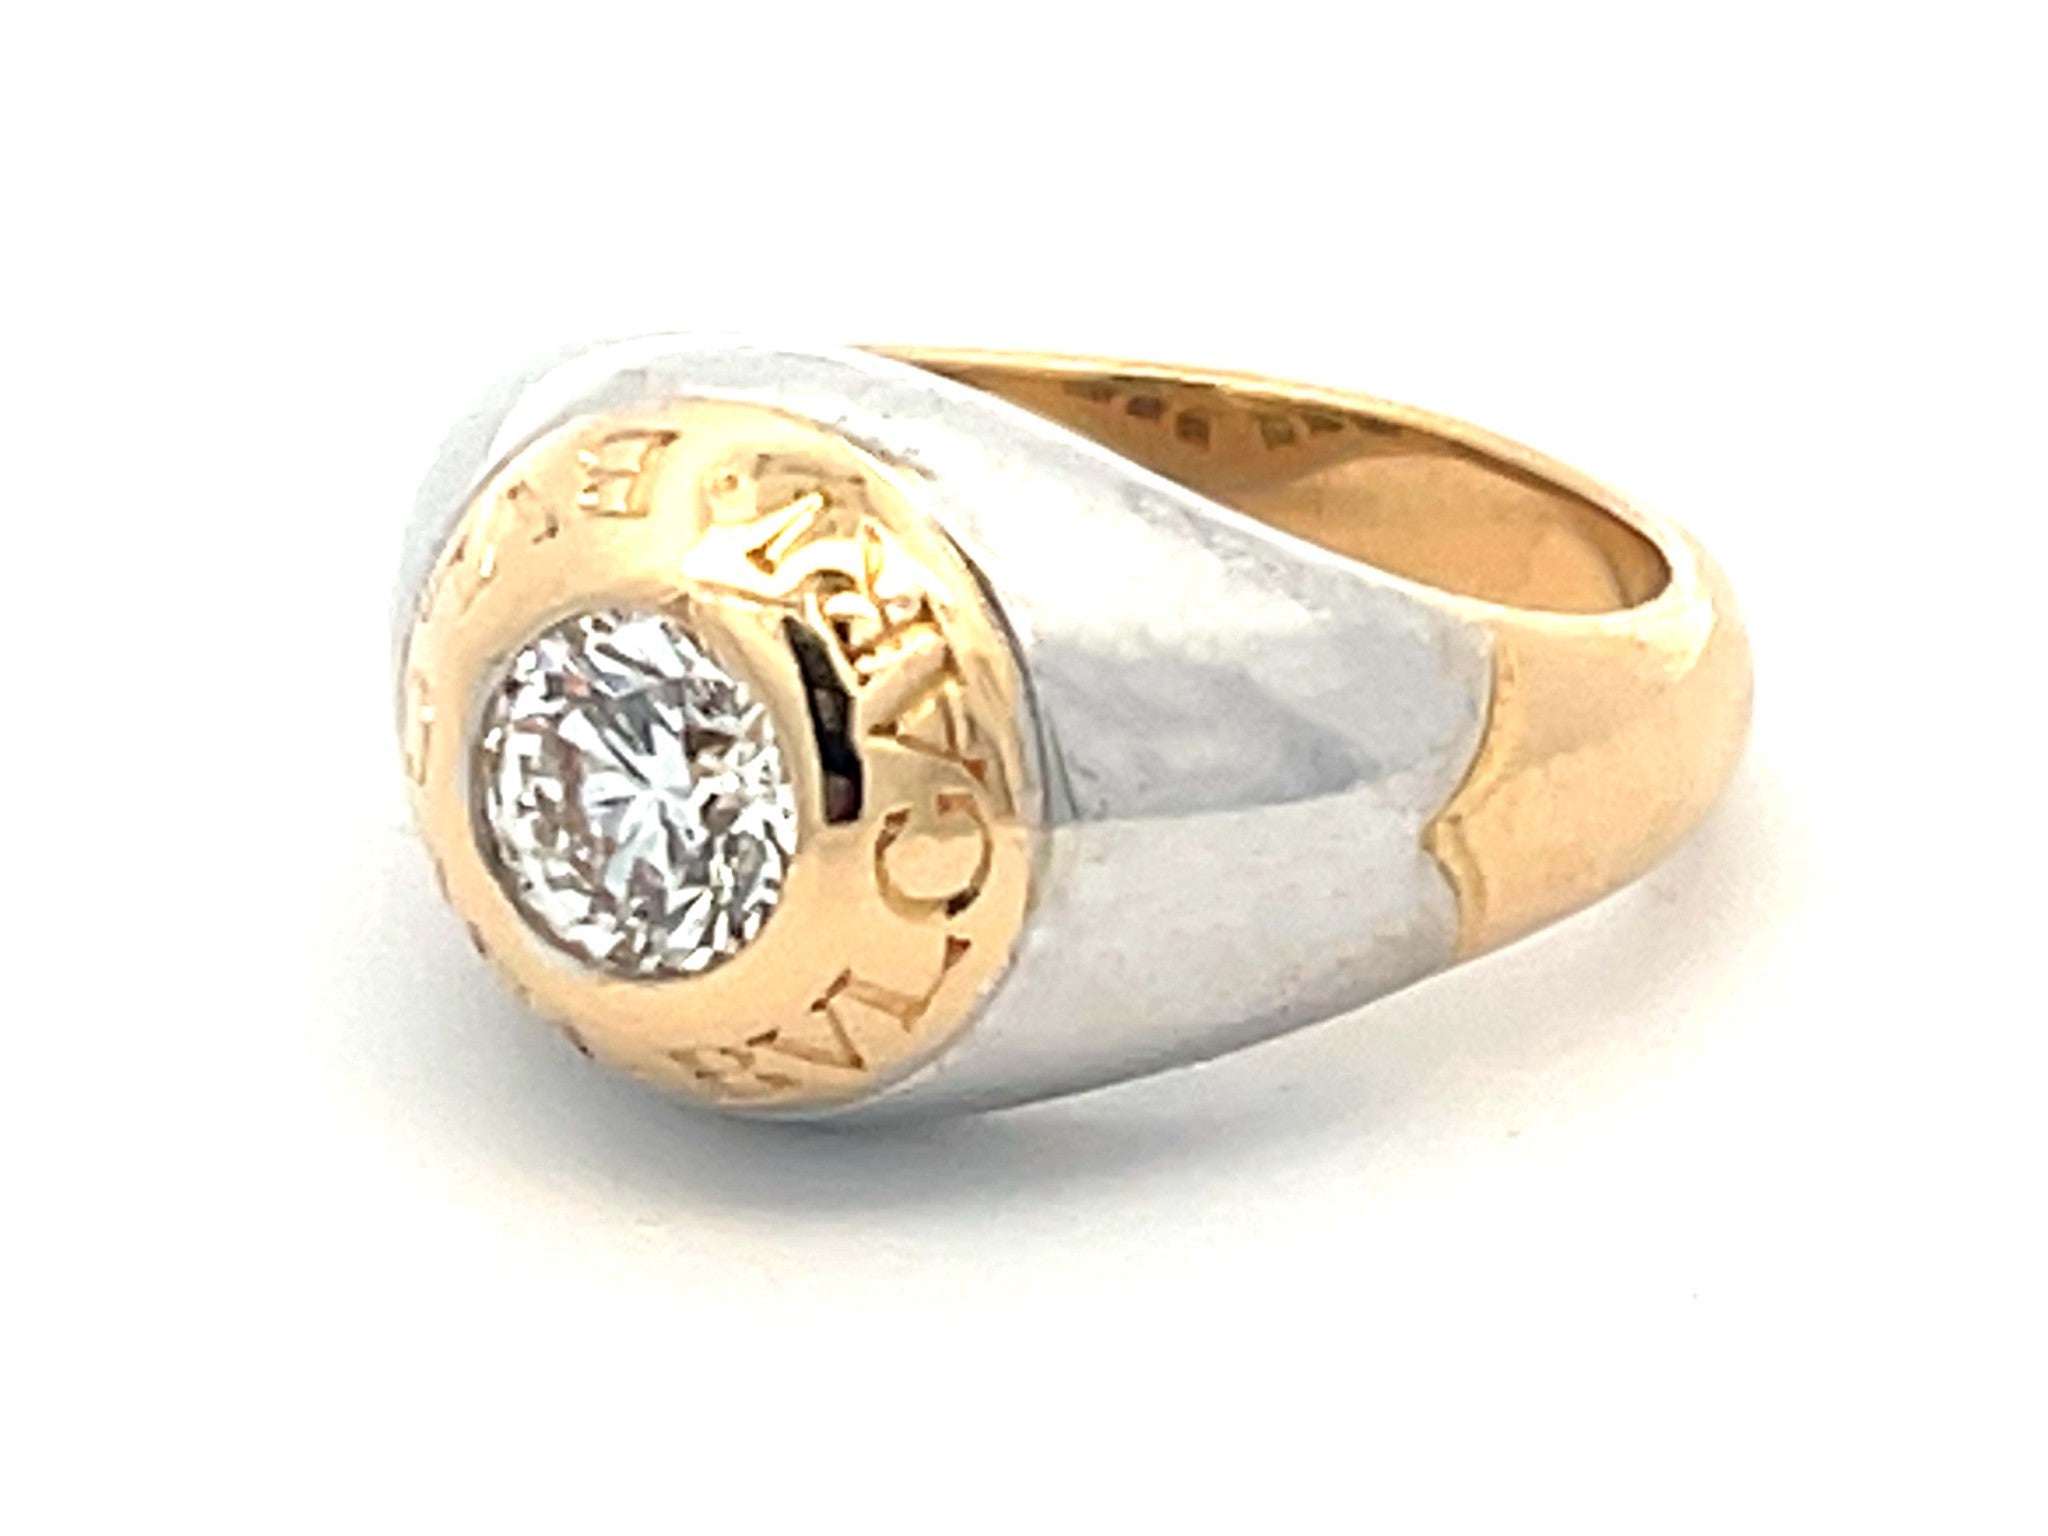 Bvlgari Diamond Ring in 18K White and Yellow Gold